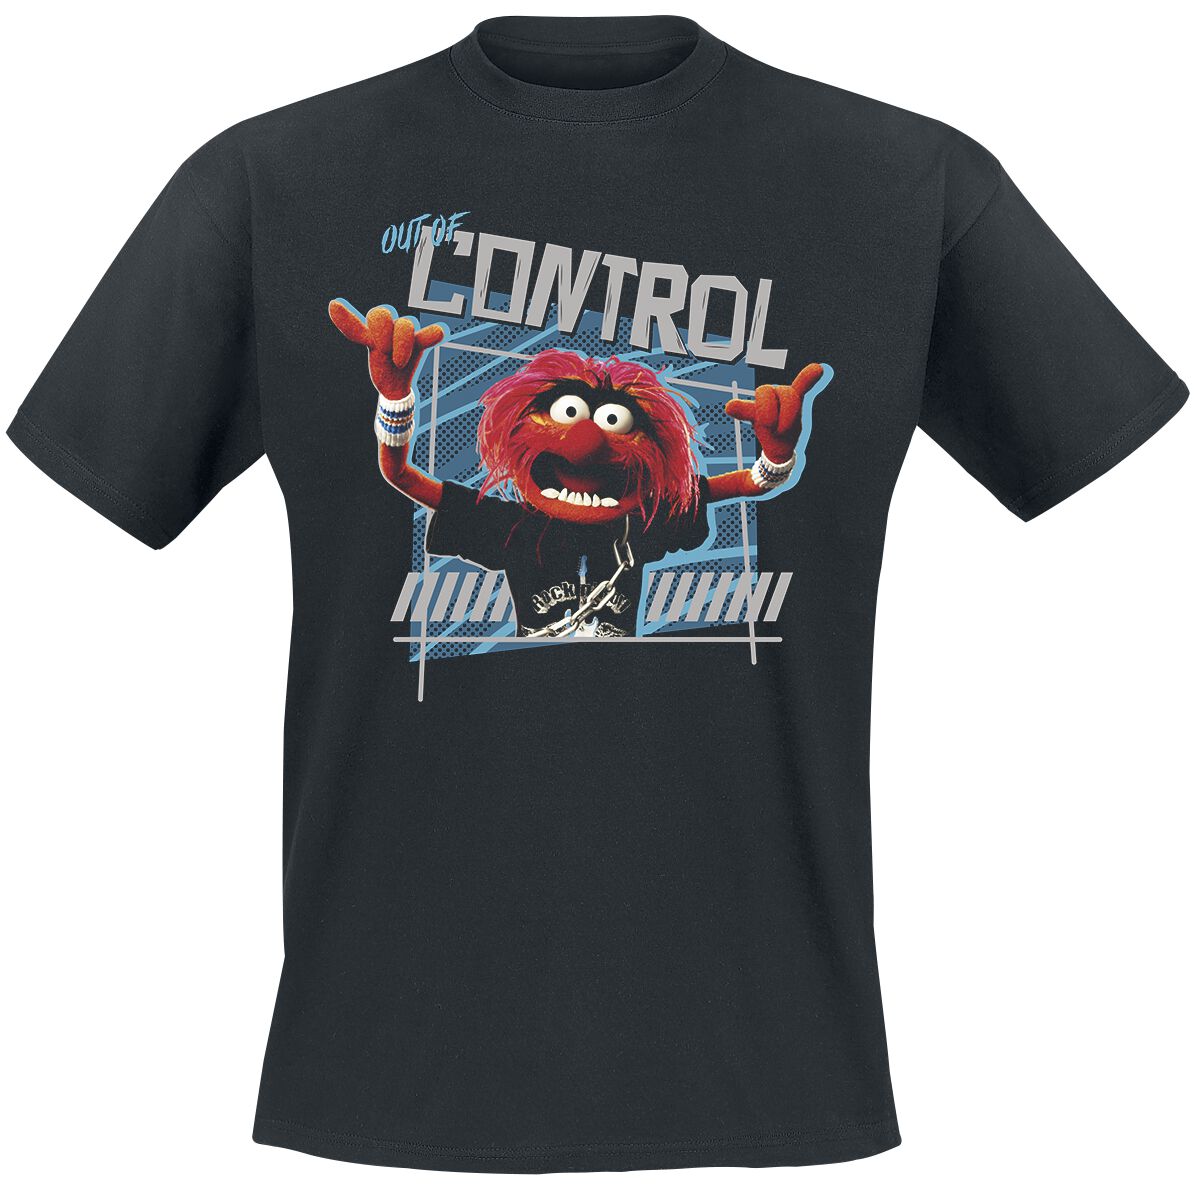 Die Muppets T-Shirt - Out Of Control - L bis 4XL - für Männer - Größe L - schwarz  - EMP exklusives Merchandise!